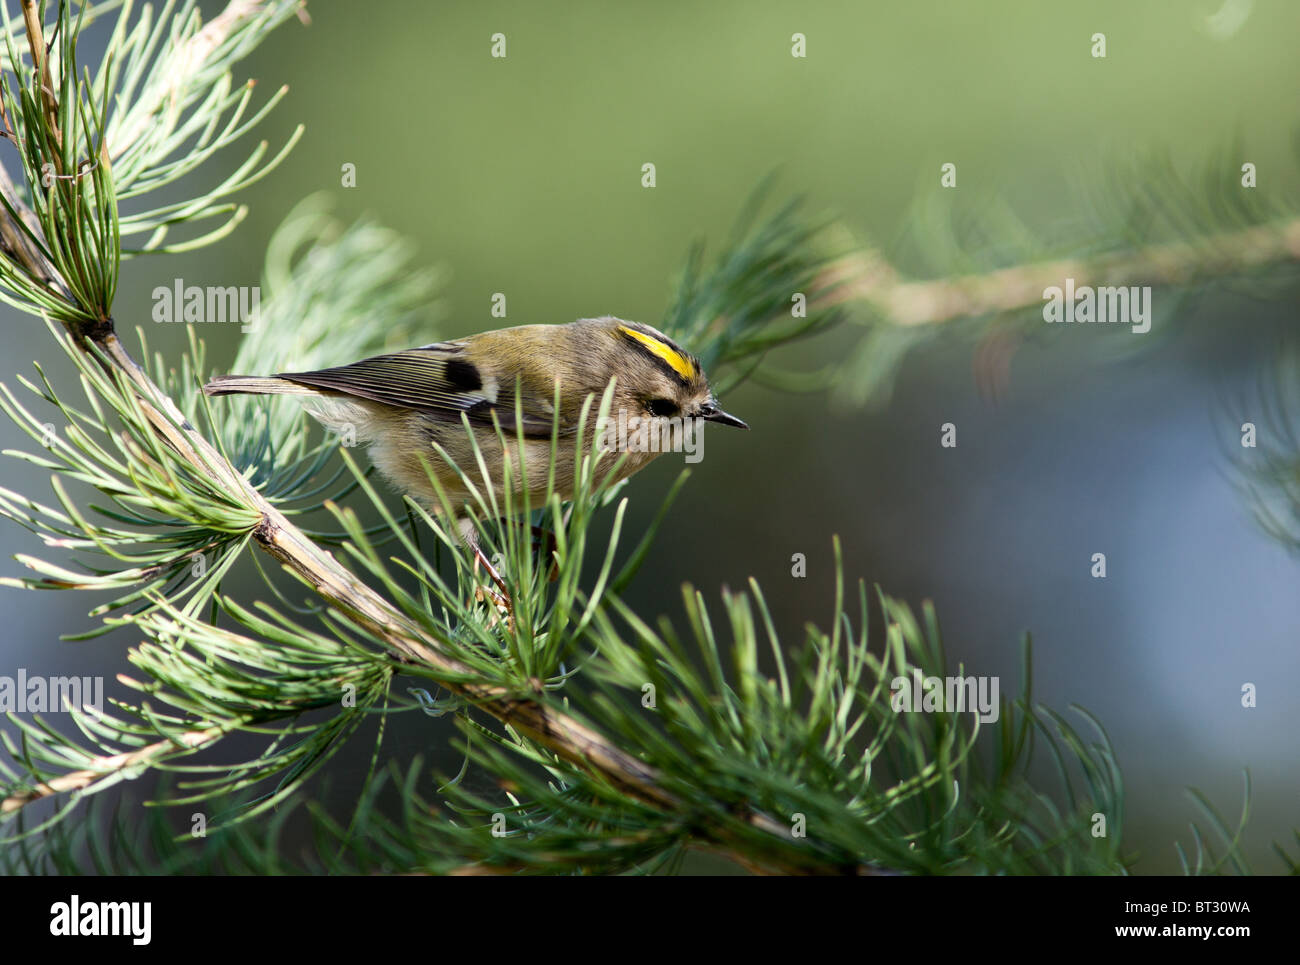 Wintergoldhähnchen Regulus Regulus. Wildvögel in einen natürlichen Lebensraum. Tierfotografie. Russland, Moskau, Timirjazevsky Park. Stockfoto